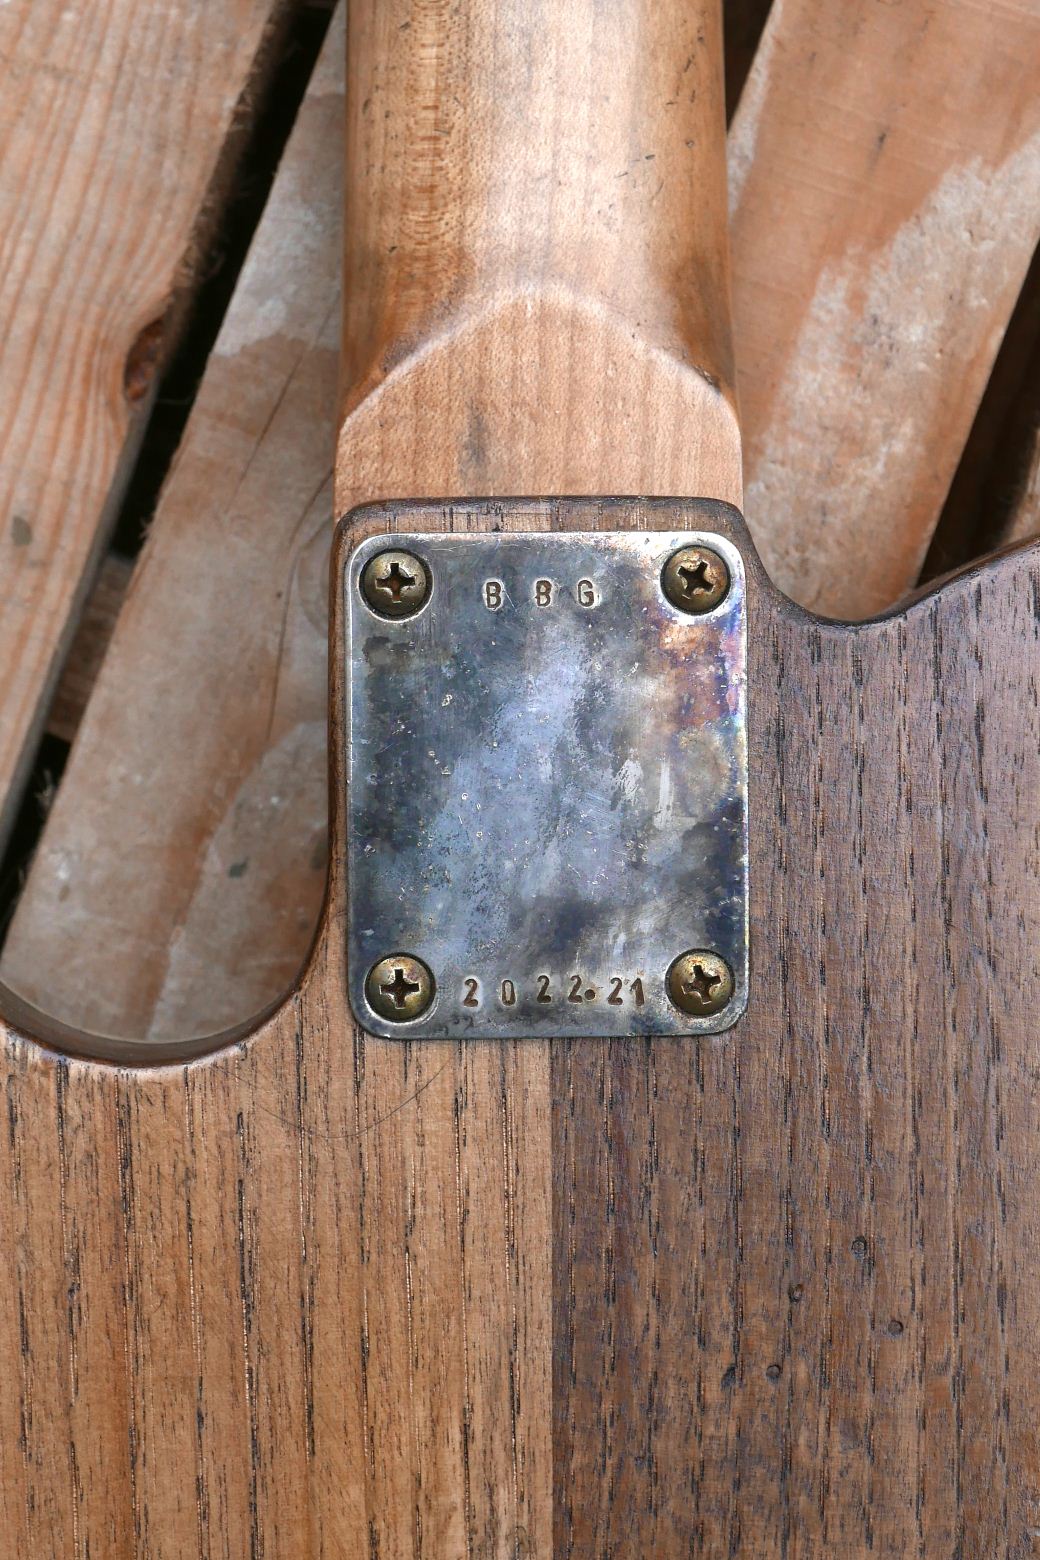 telecaster guitar neckplate serial number